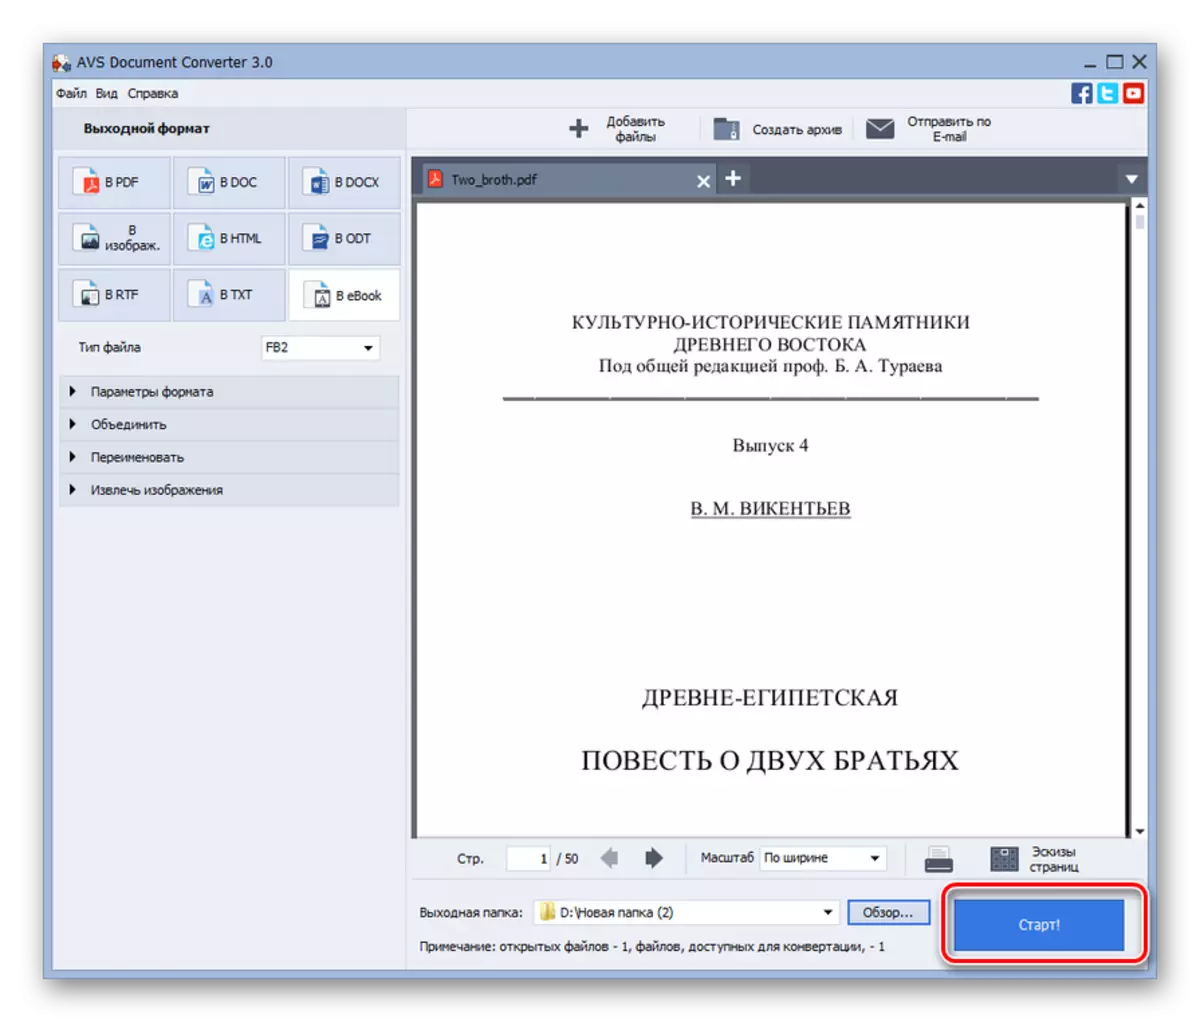 تشغيل PDF إجراء التحويل في FB2 في AVS محول الوثيقة